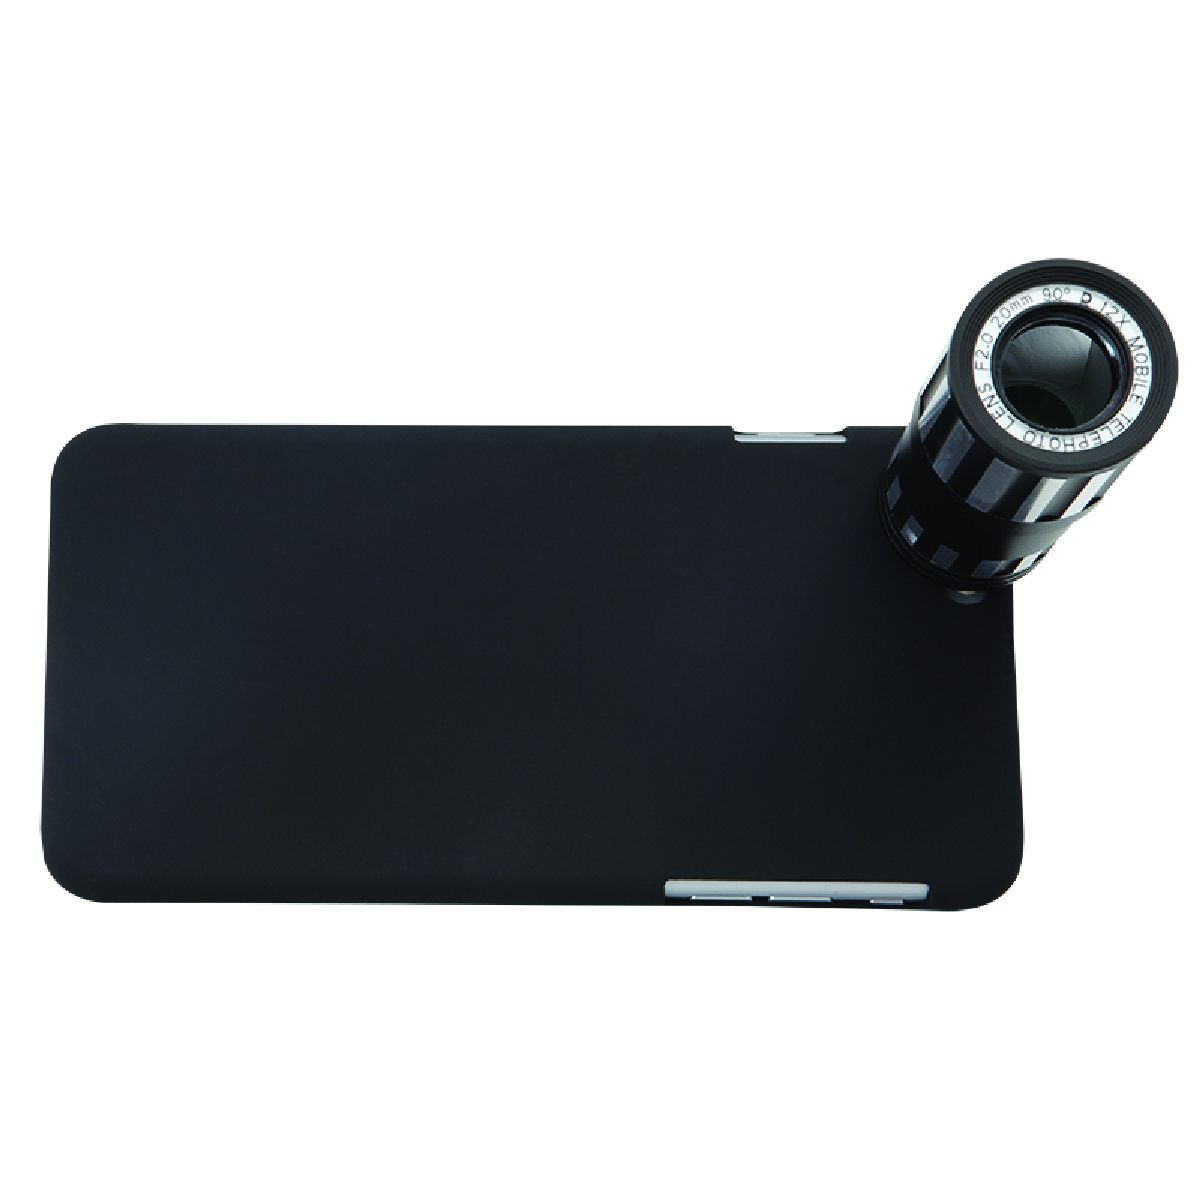 Black iPhone 6 Plus Telephoto Lens Kit